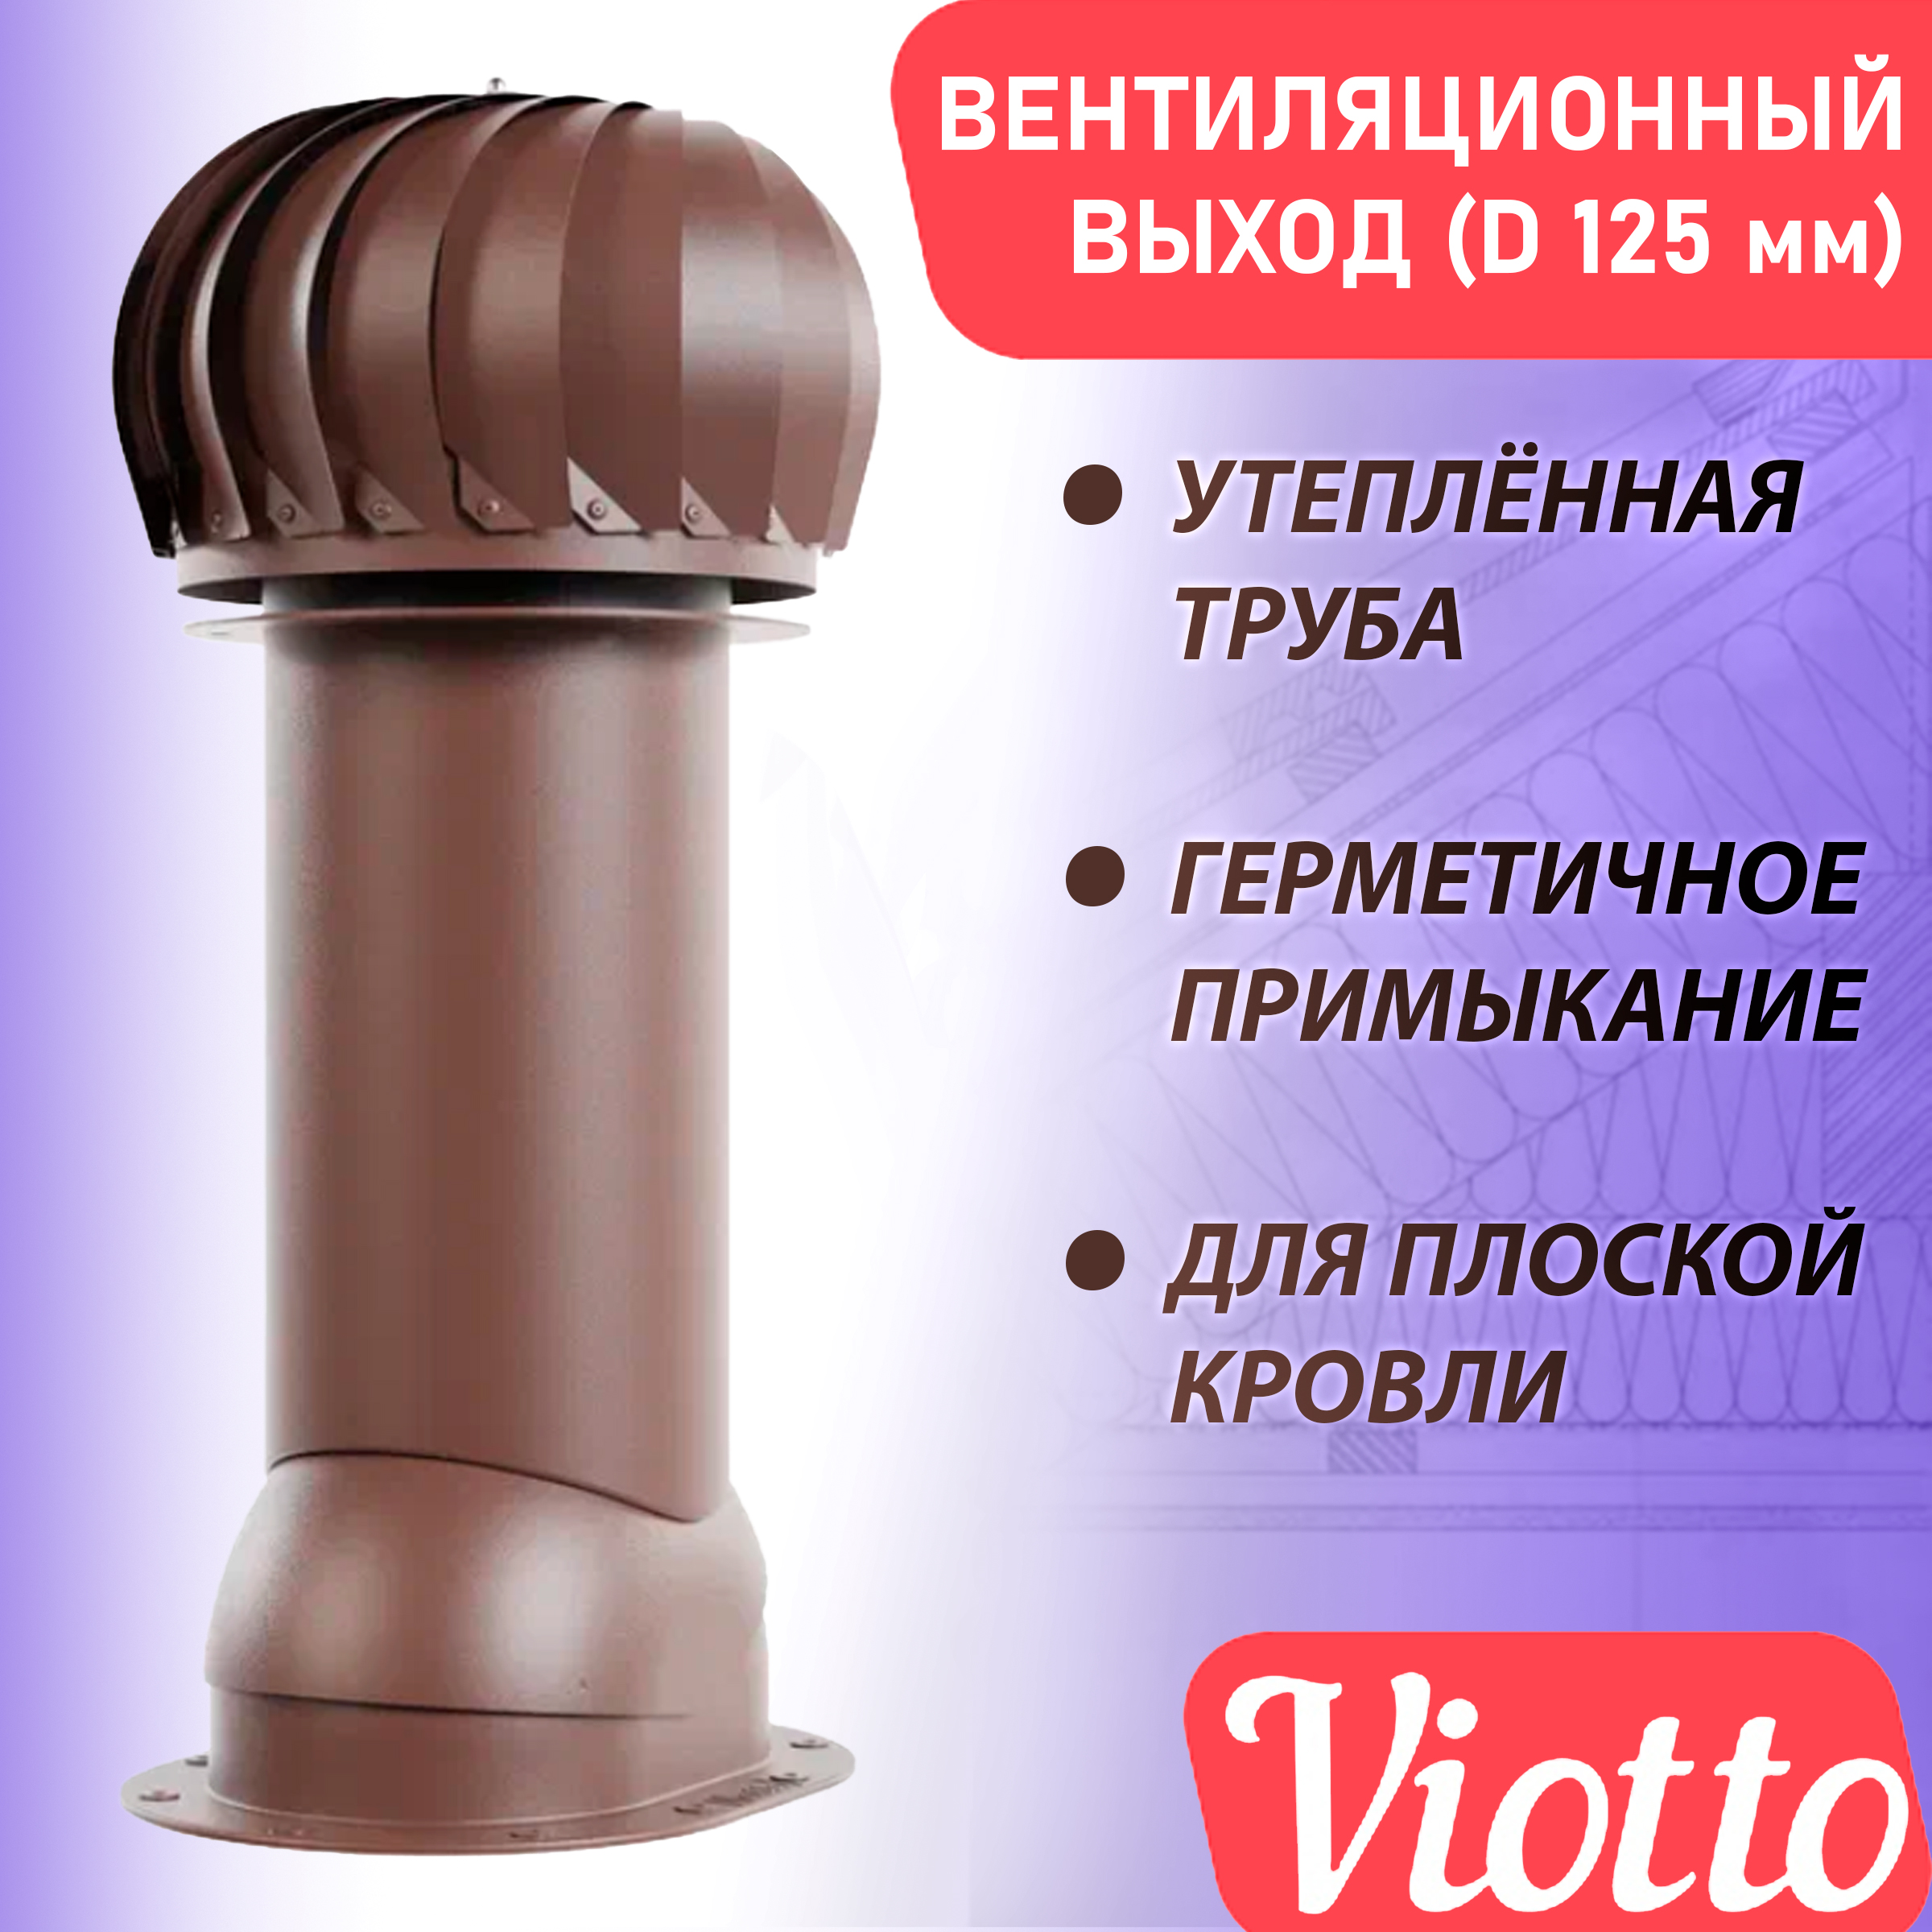 фото Труба вентиляционная роторная viotto (125 мм) ral 8017 для мягкой, плоской кровли, фальца